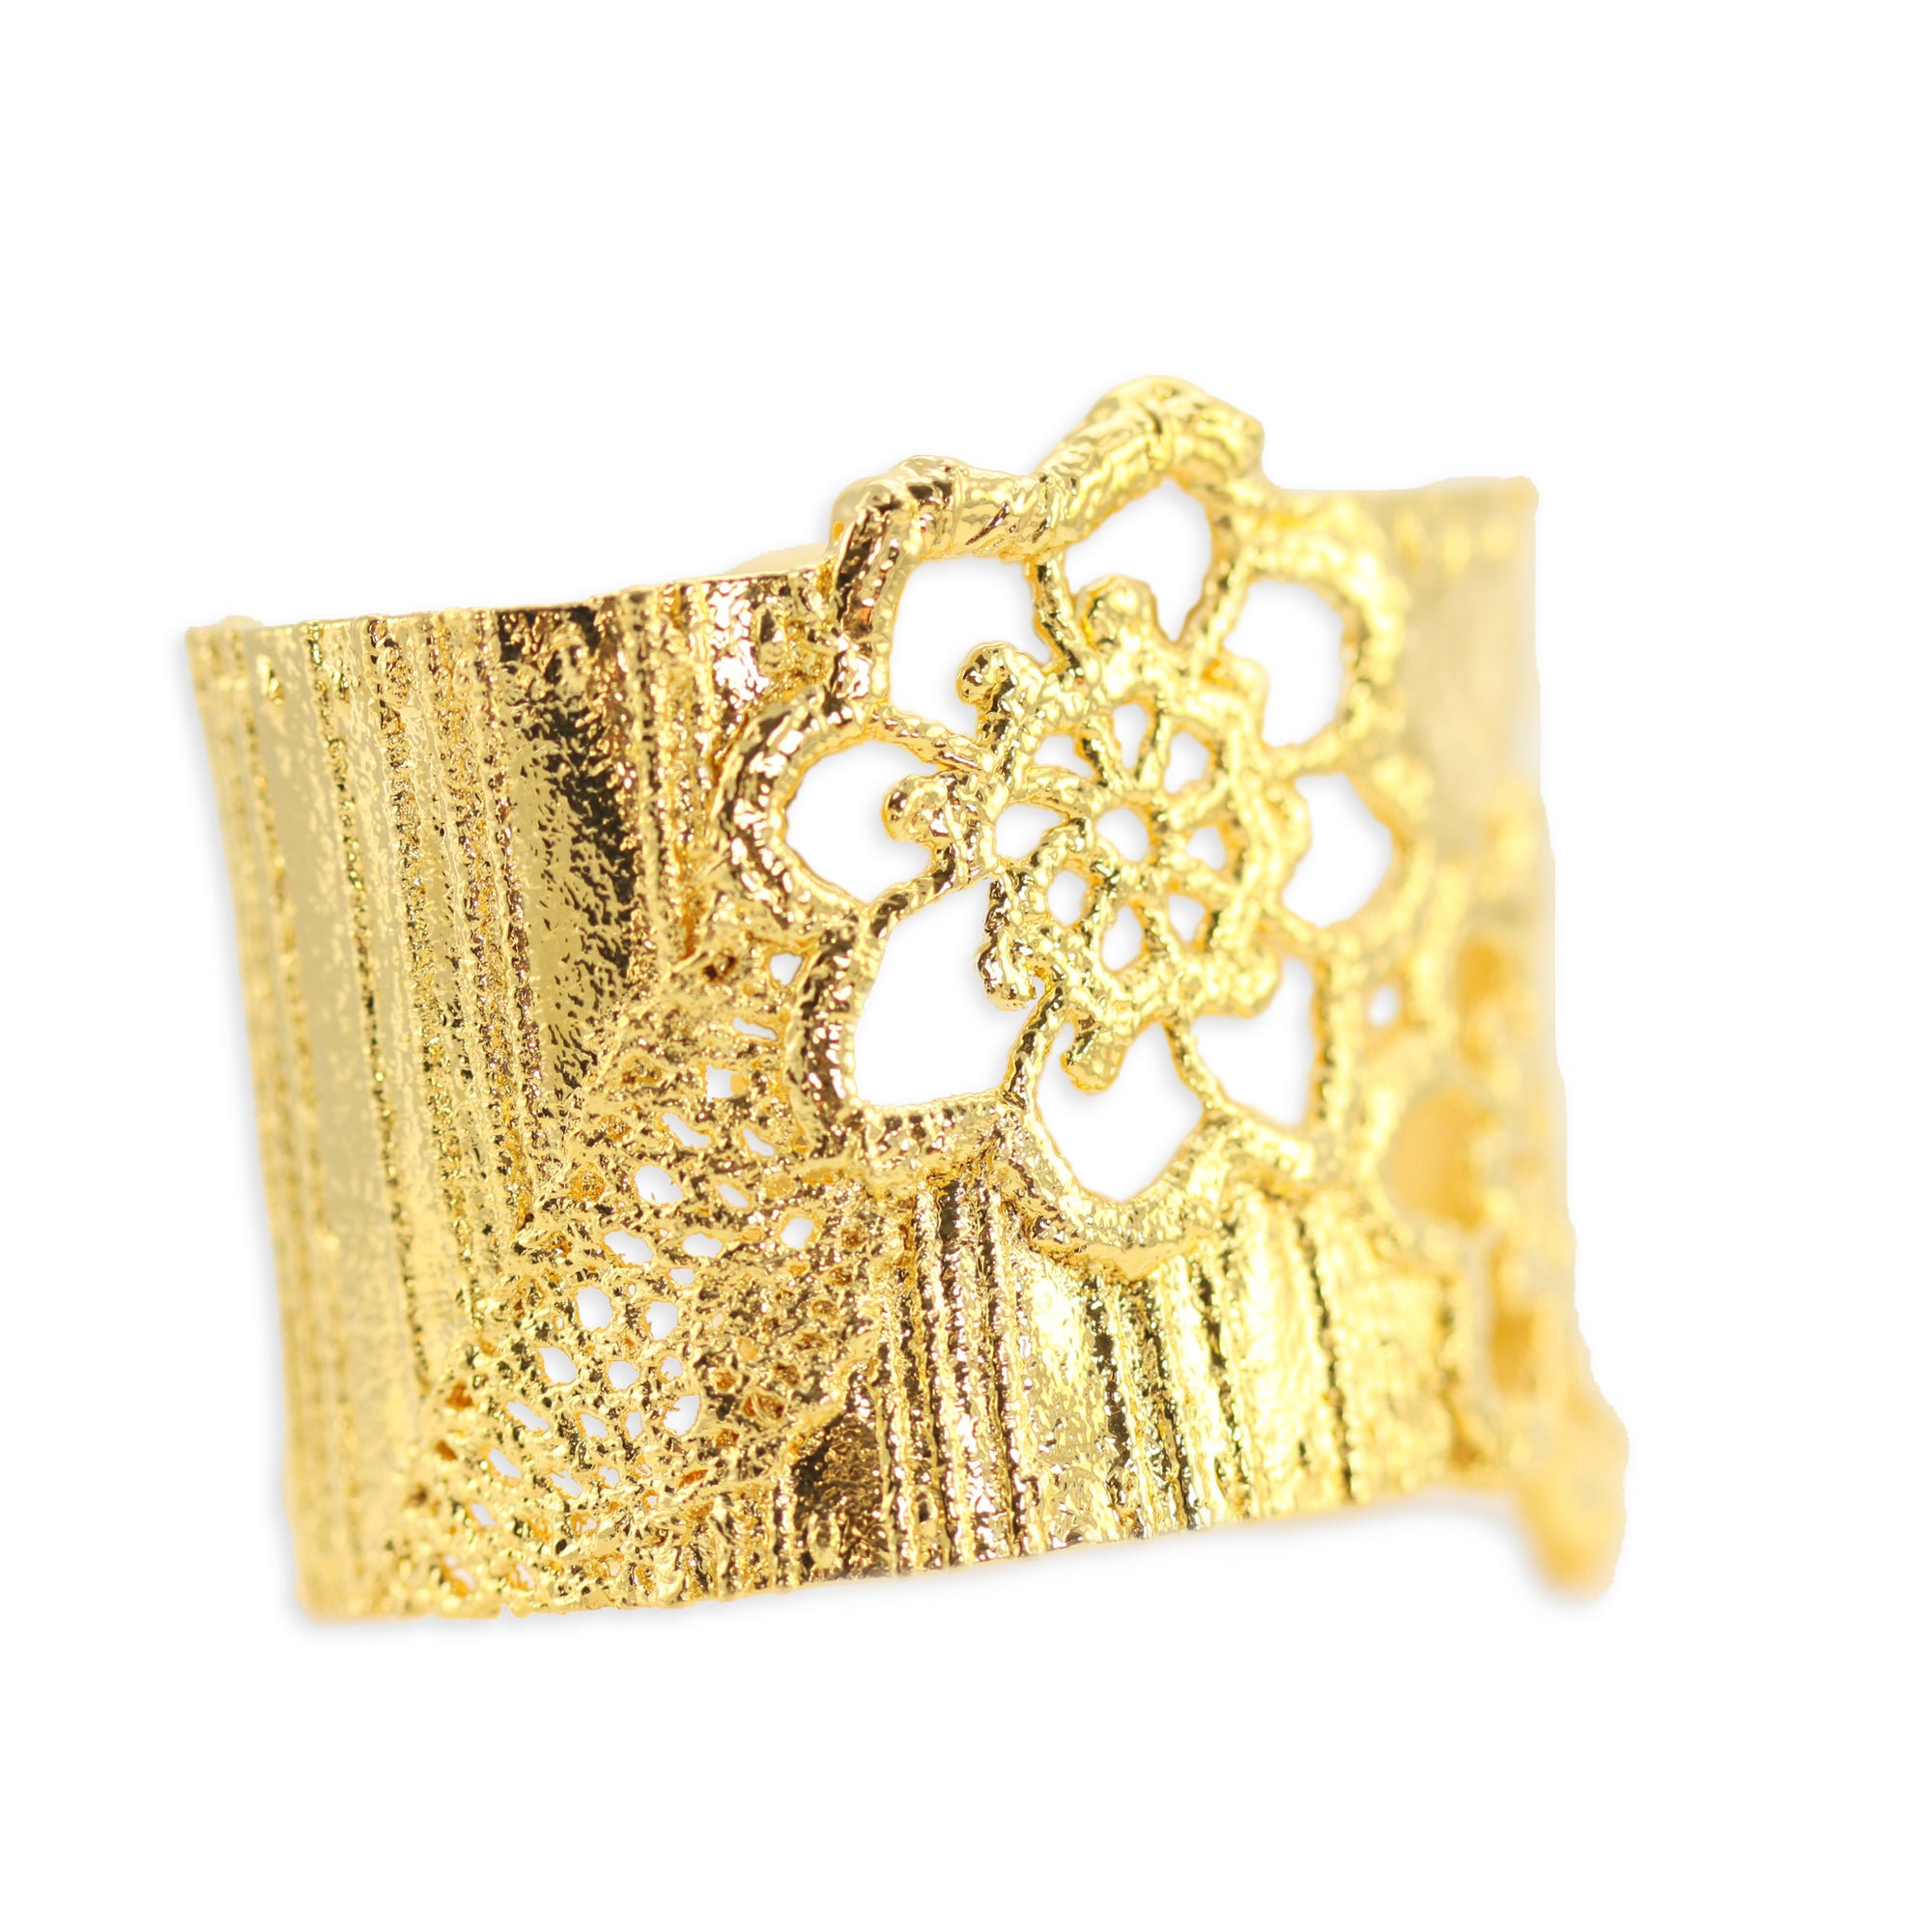 Esperanza lace cuff bracelet dipped in 24k gold.